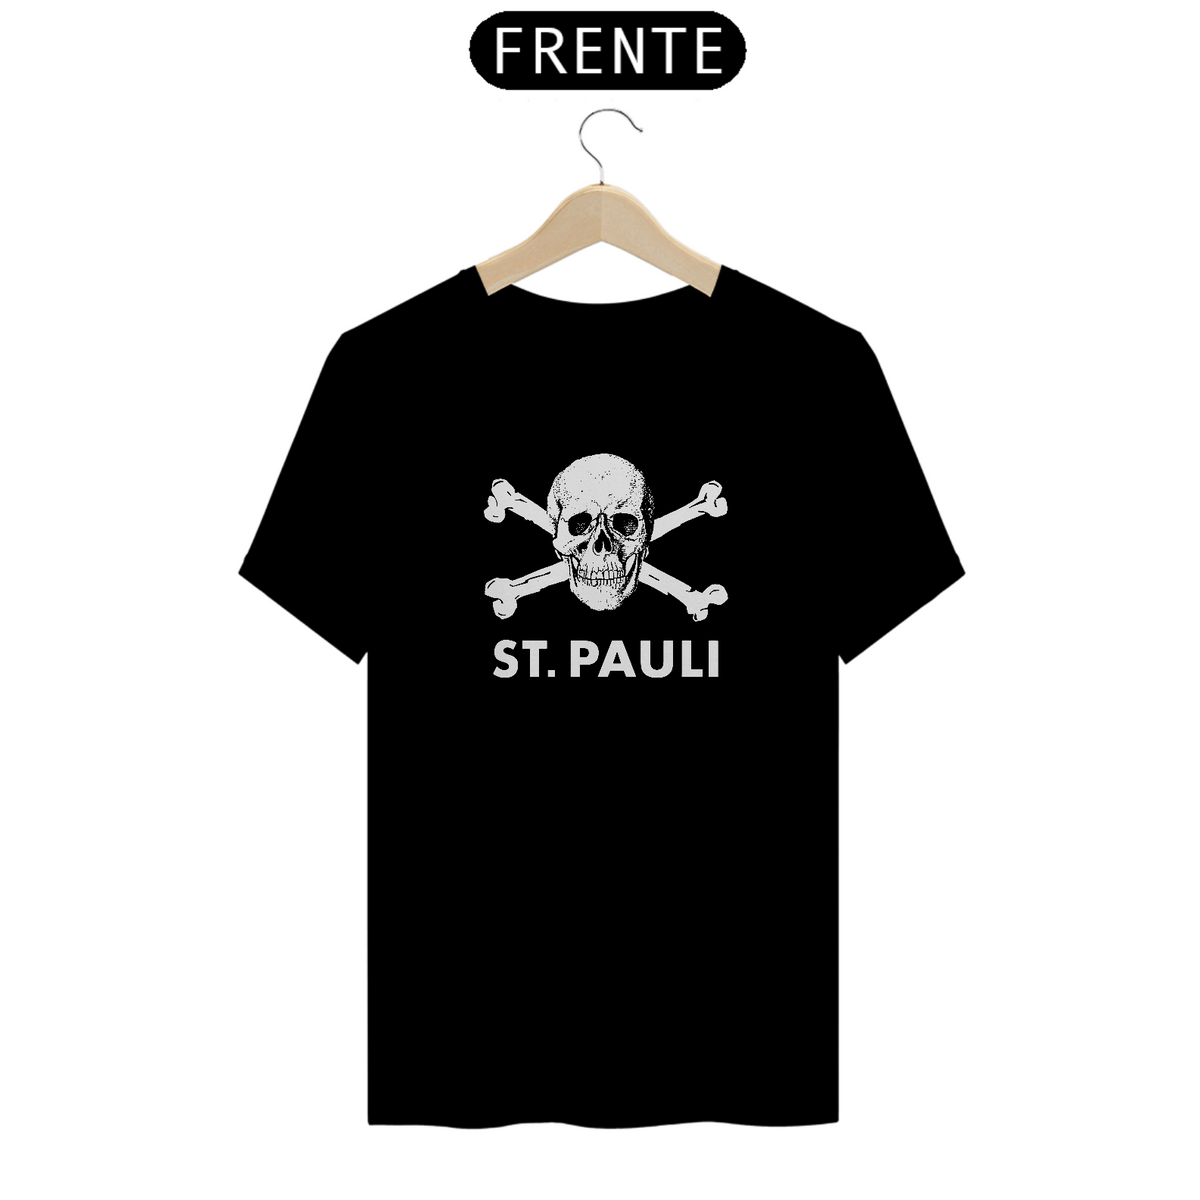 Nome do produto: St. Pauli